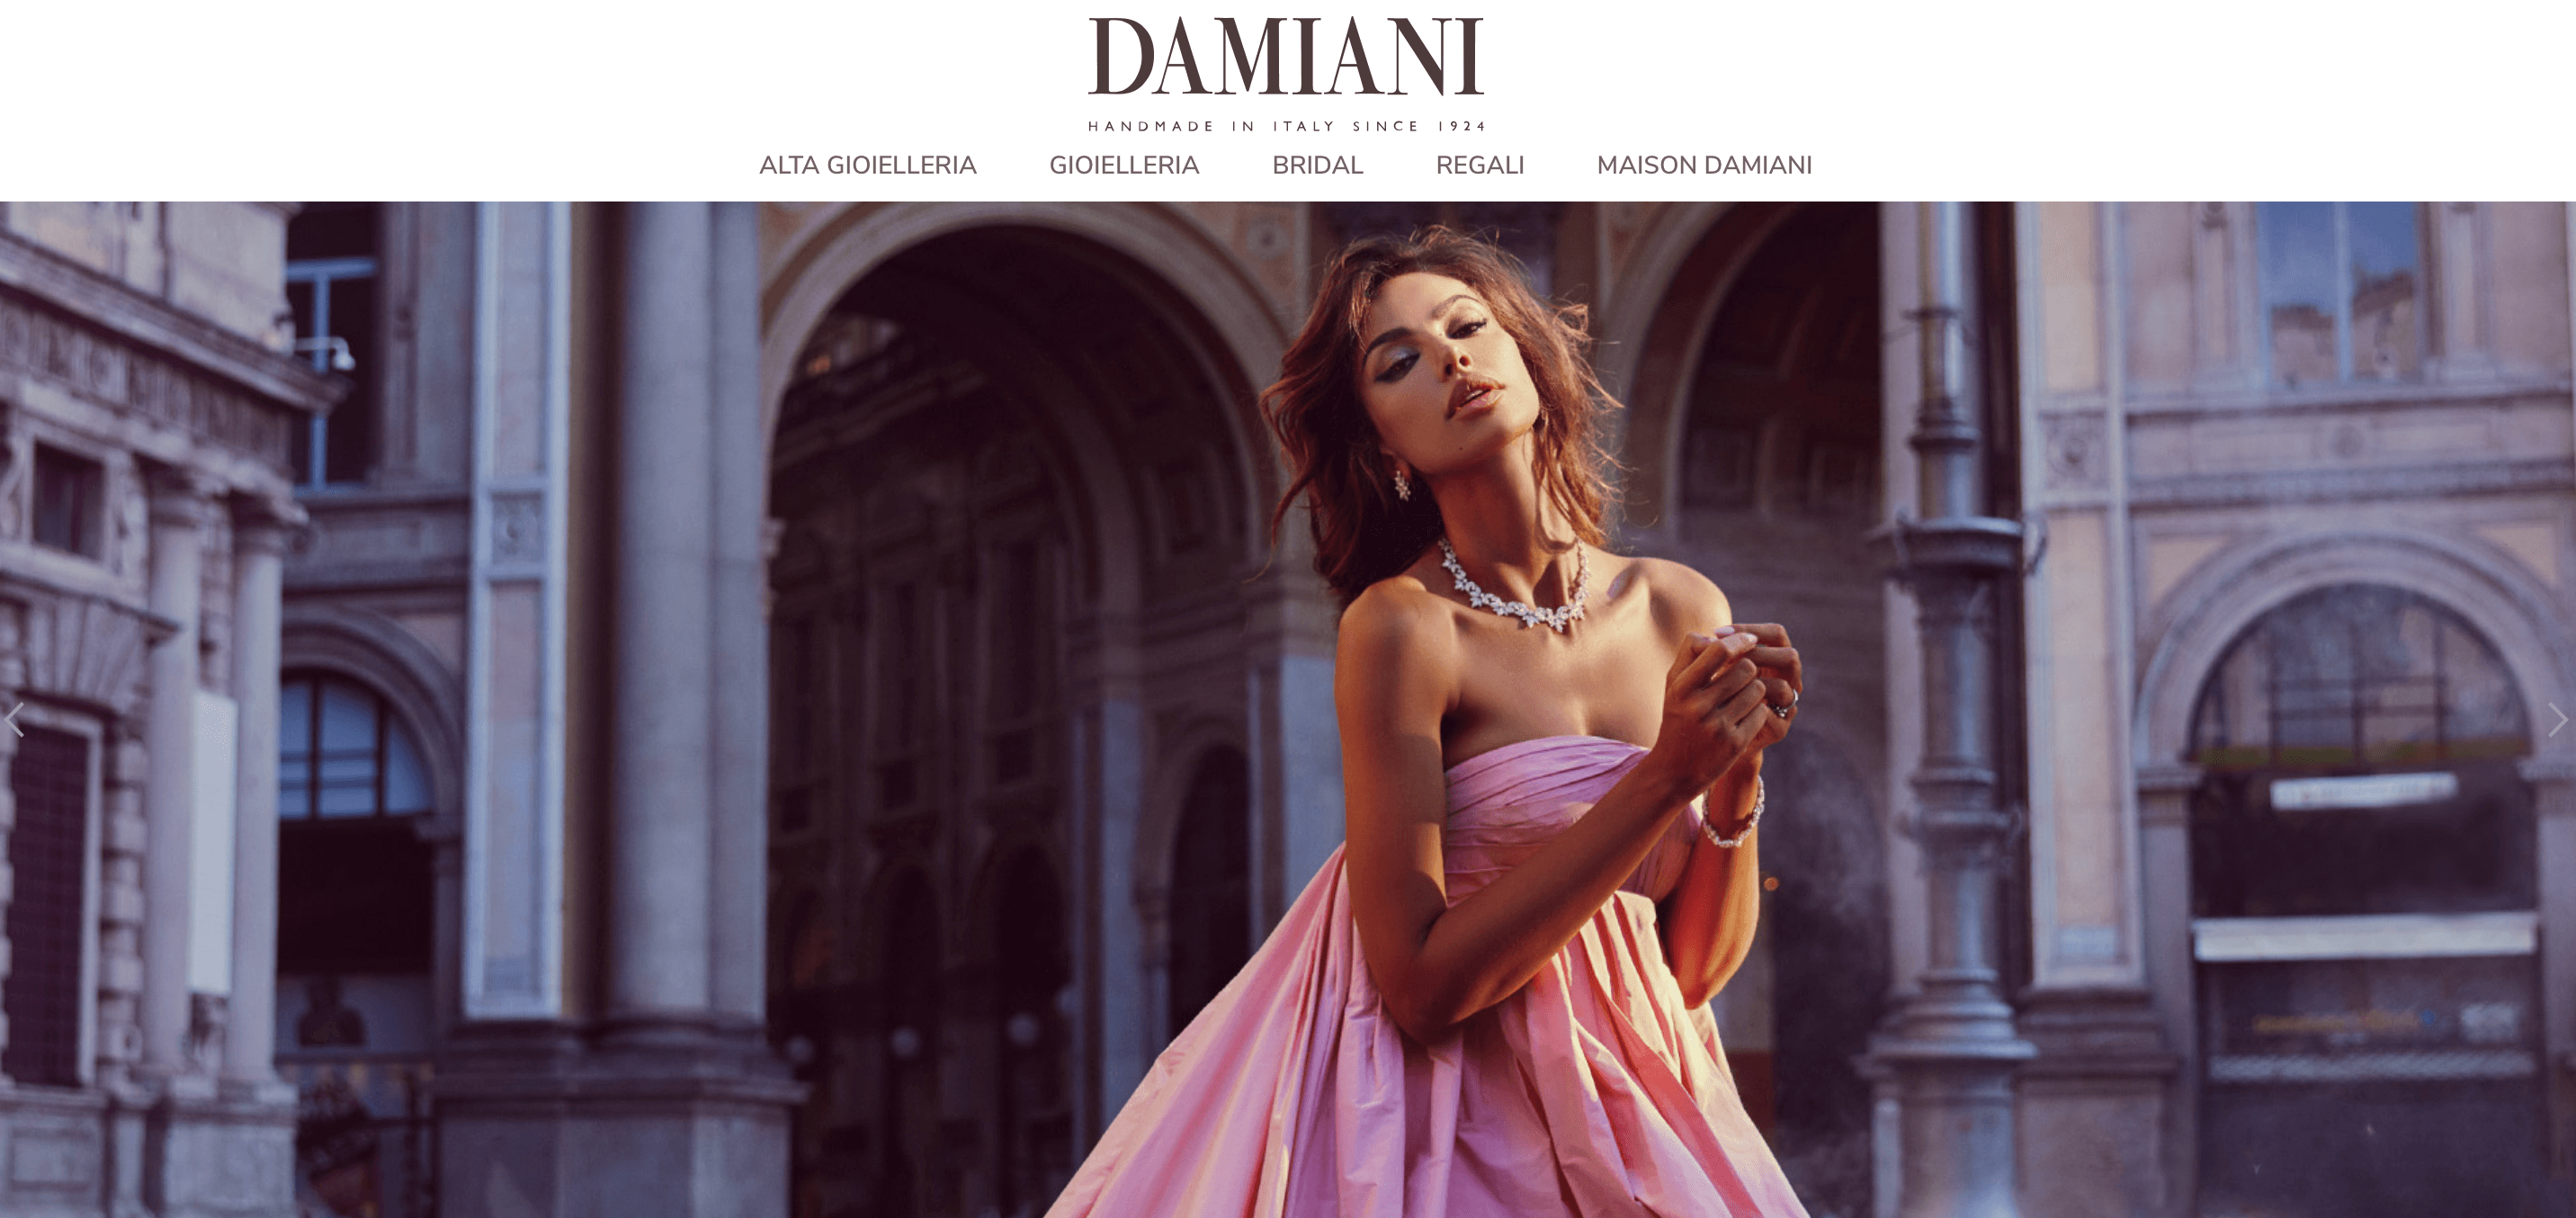 意大利高级珠宝集团 Damiani 2021年营收将远超2019年水平